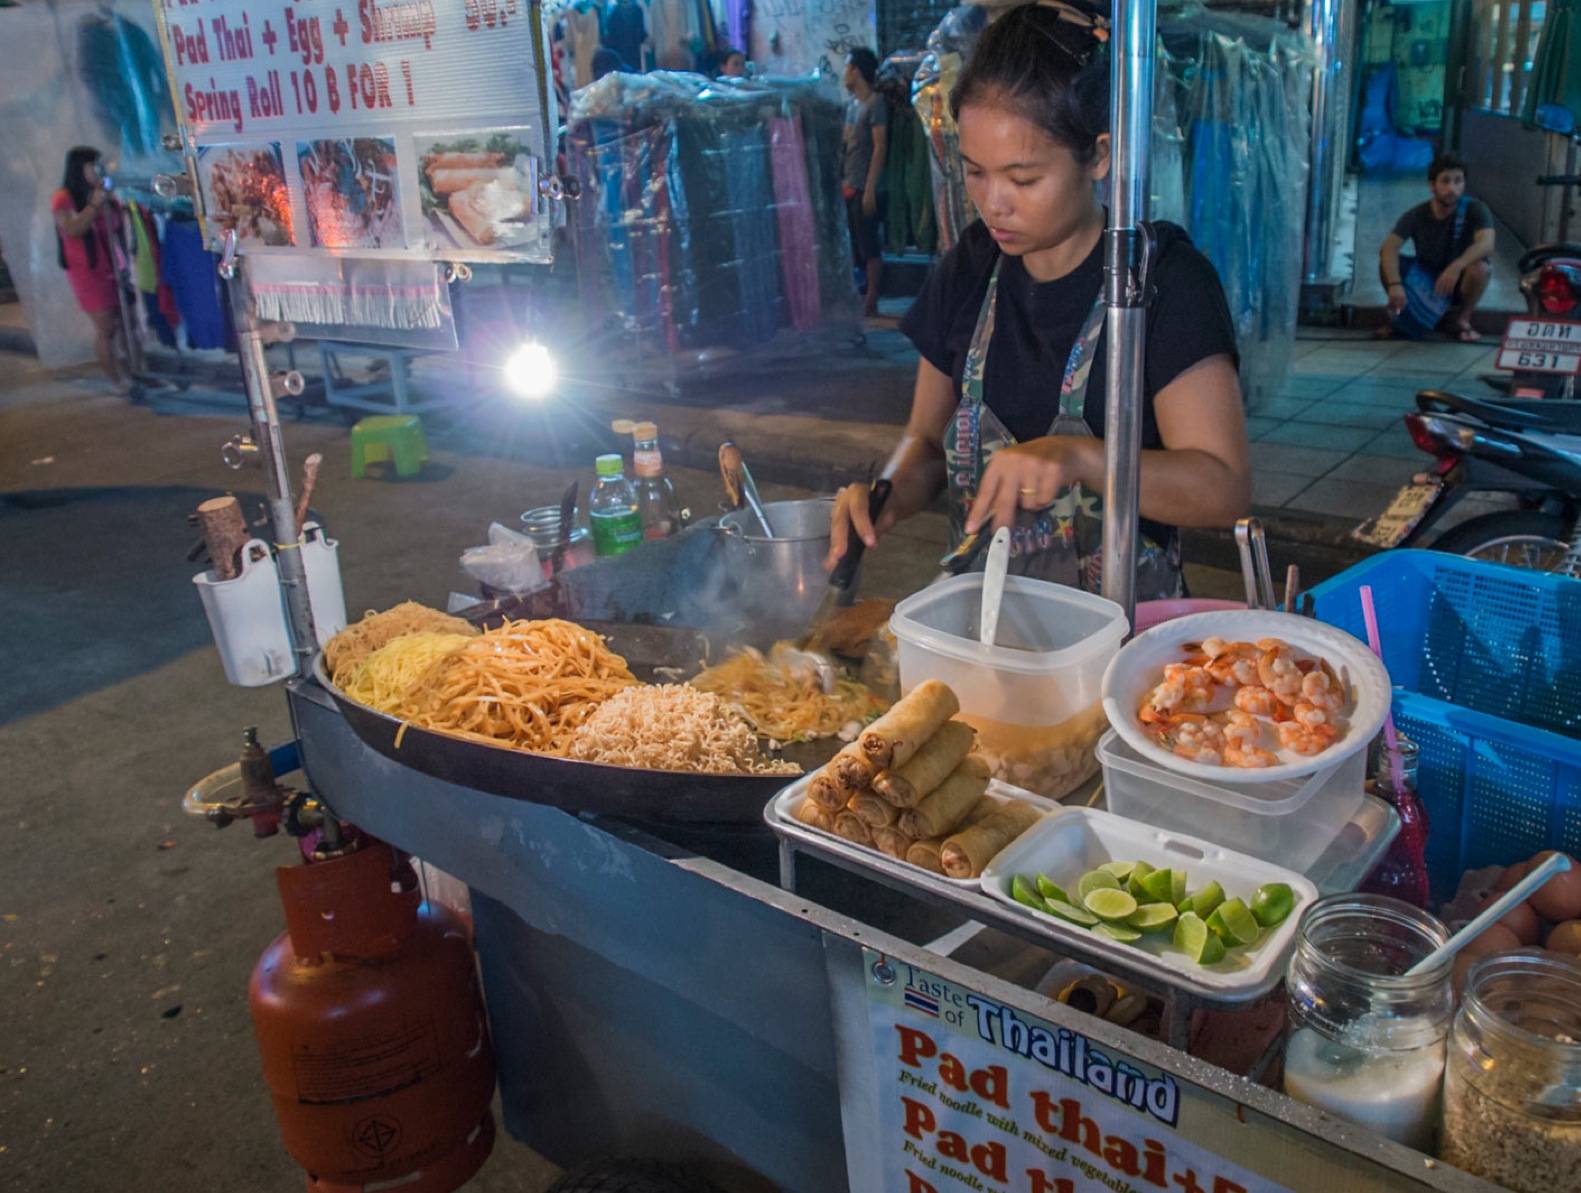 Традиционные блюда тайланда - то, что обязательно нужно попробовать